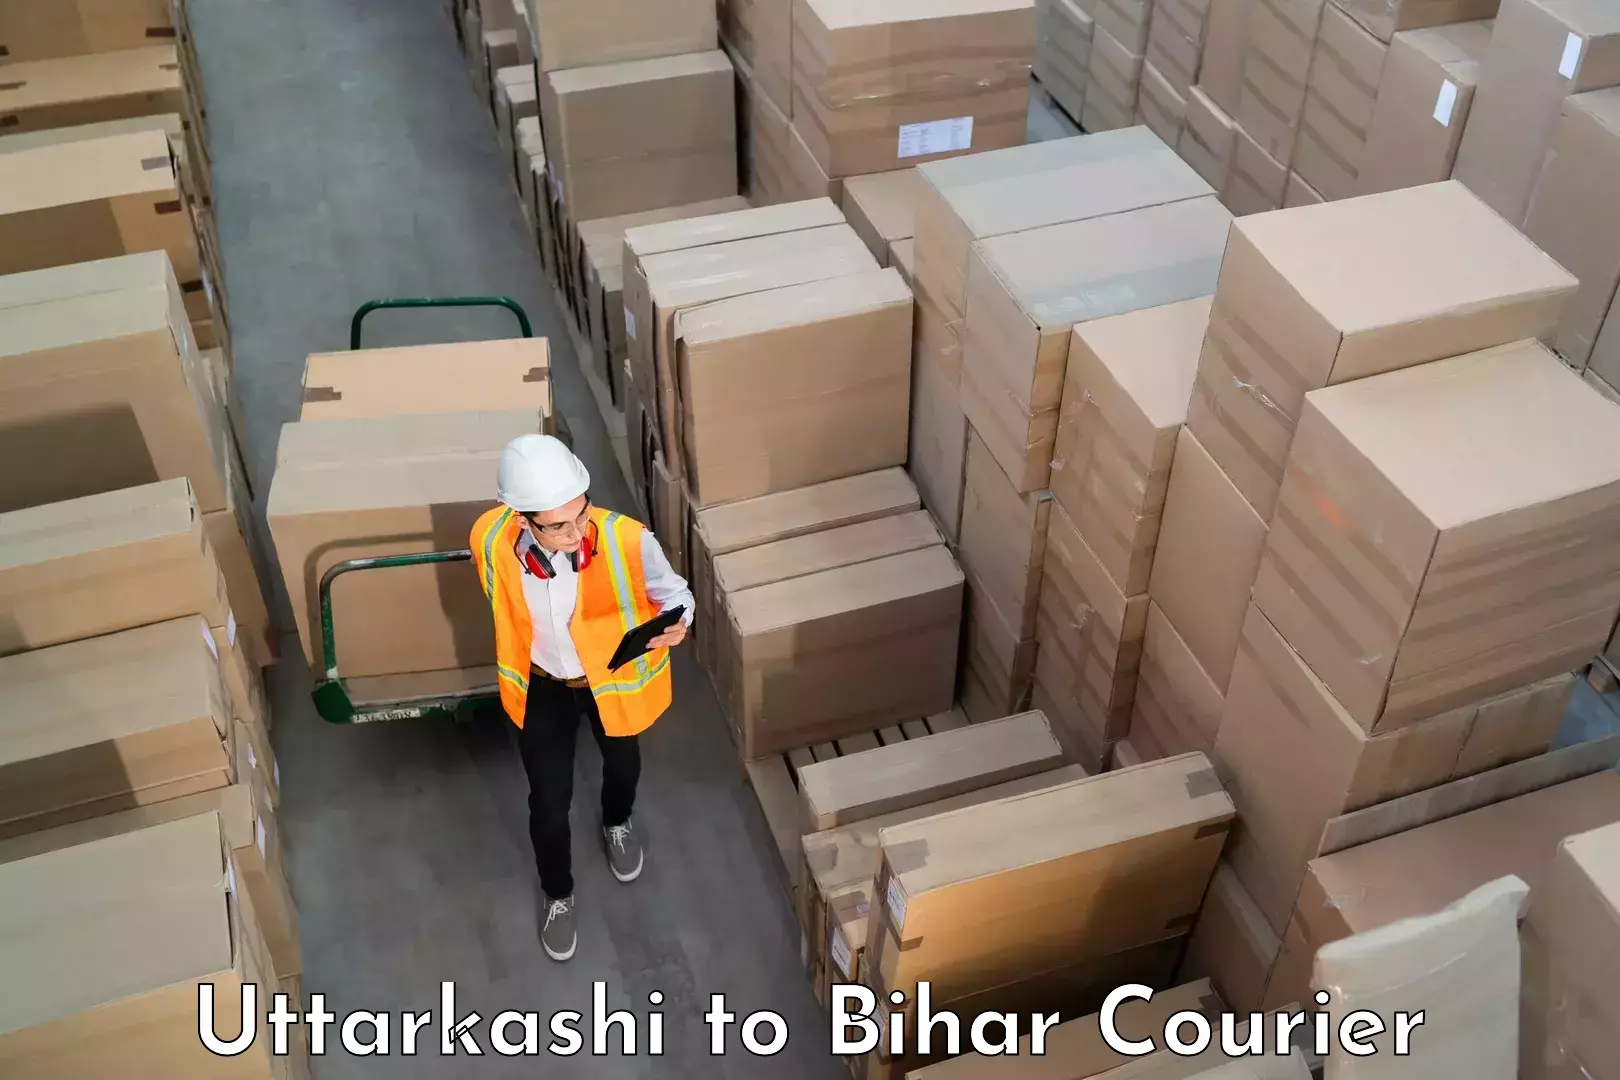 Customized luggage delivery Uttarkashi to Sirdala